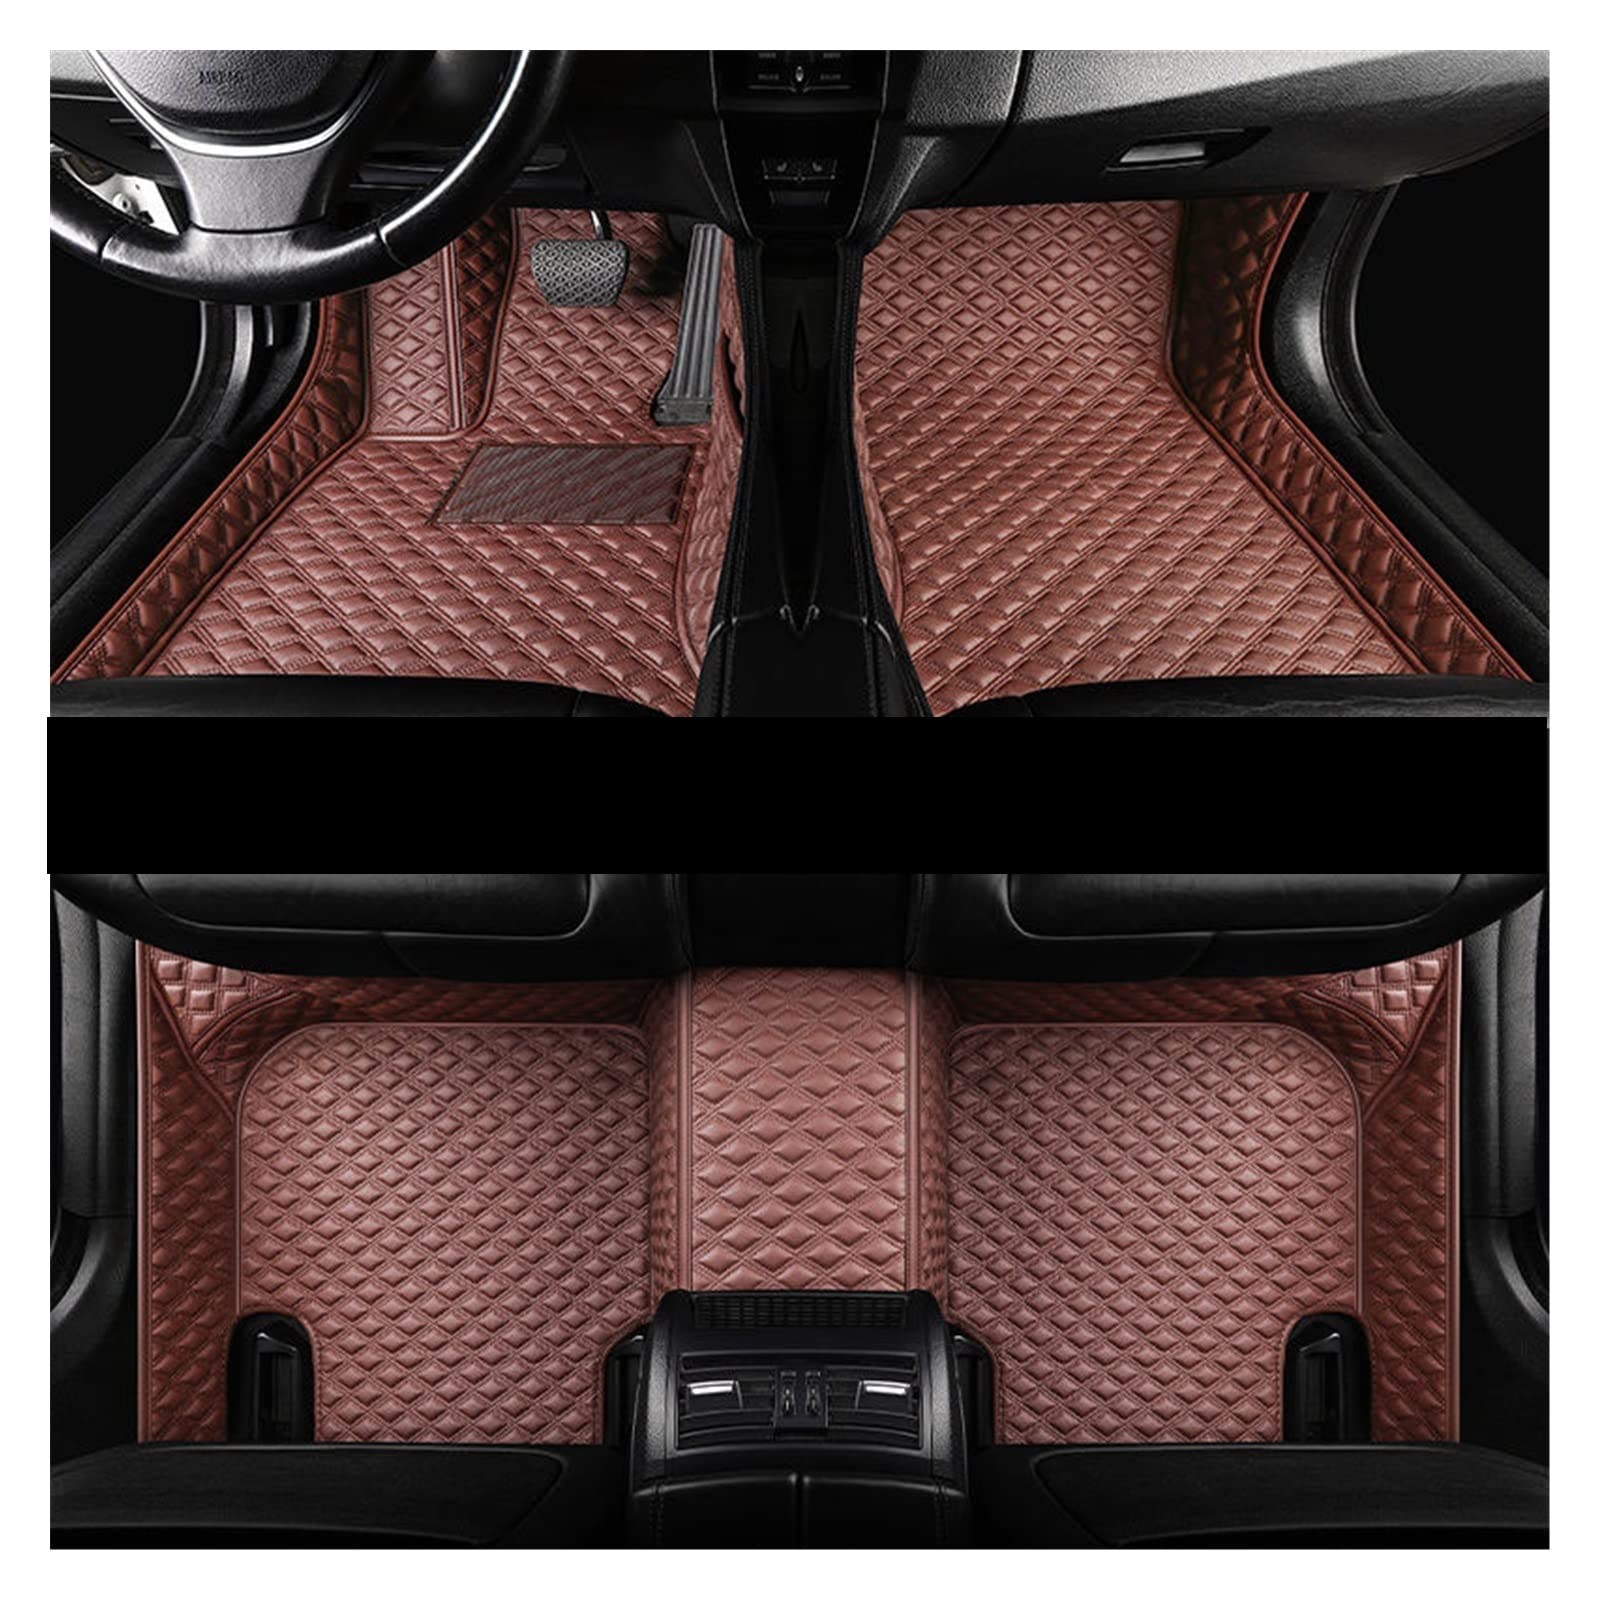 Fußmatten Für Tesla Für Modell X 2016 2017 2018 2019 Auto Fußmatten Teppiche Autoinnenausstattung Teile Armaturenbrett Fußpolster Autos Autofußmatten(Kaffee) von DKPMWD